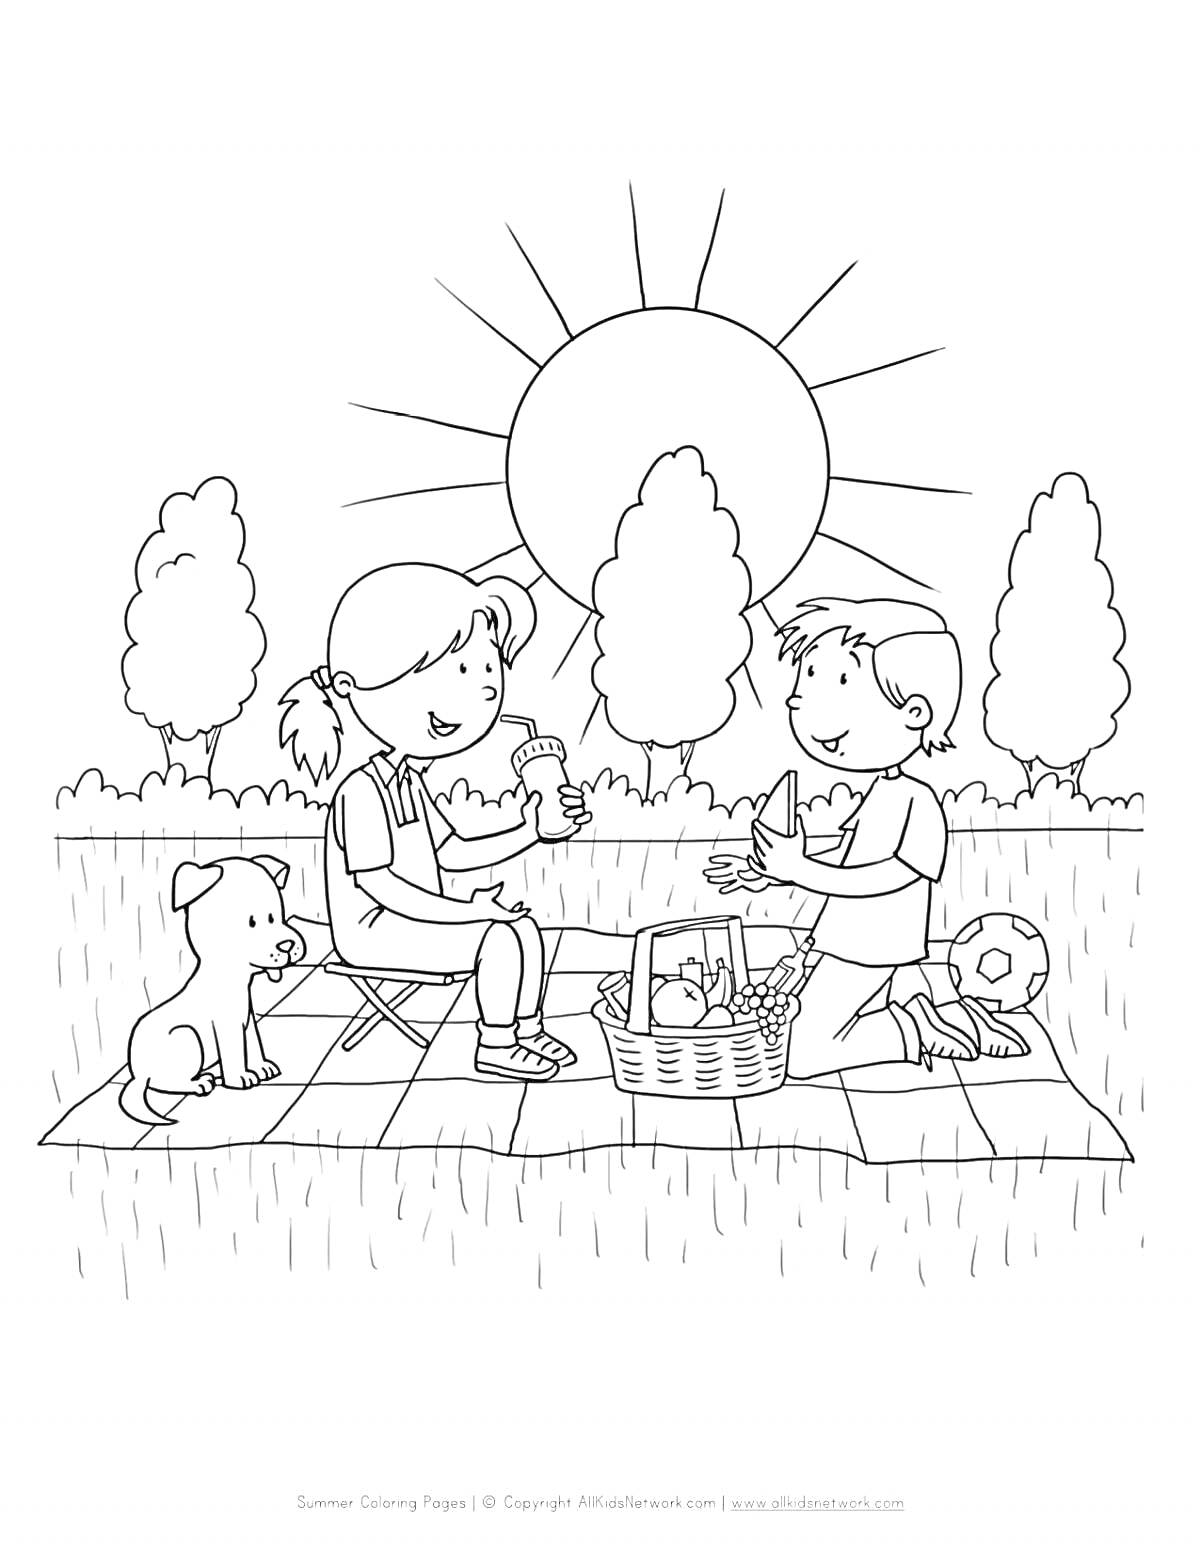 Раскраска Дети на пикнике с собакой, корзиной и мячом на фоне солнца и деревьев